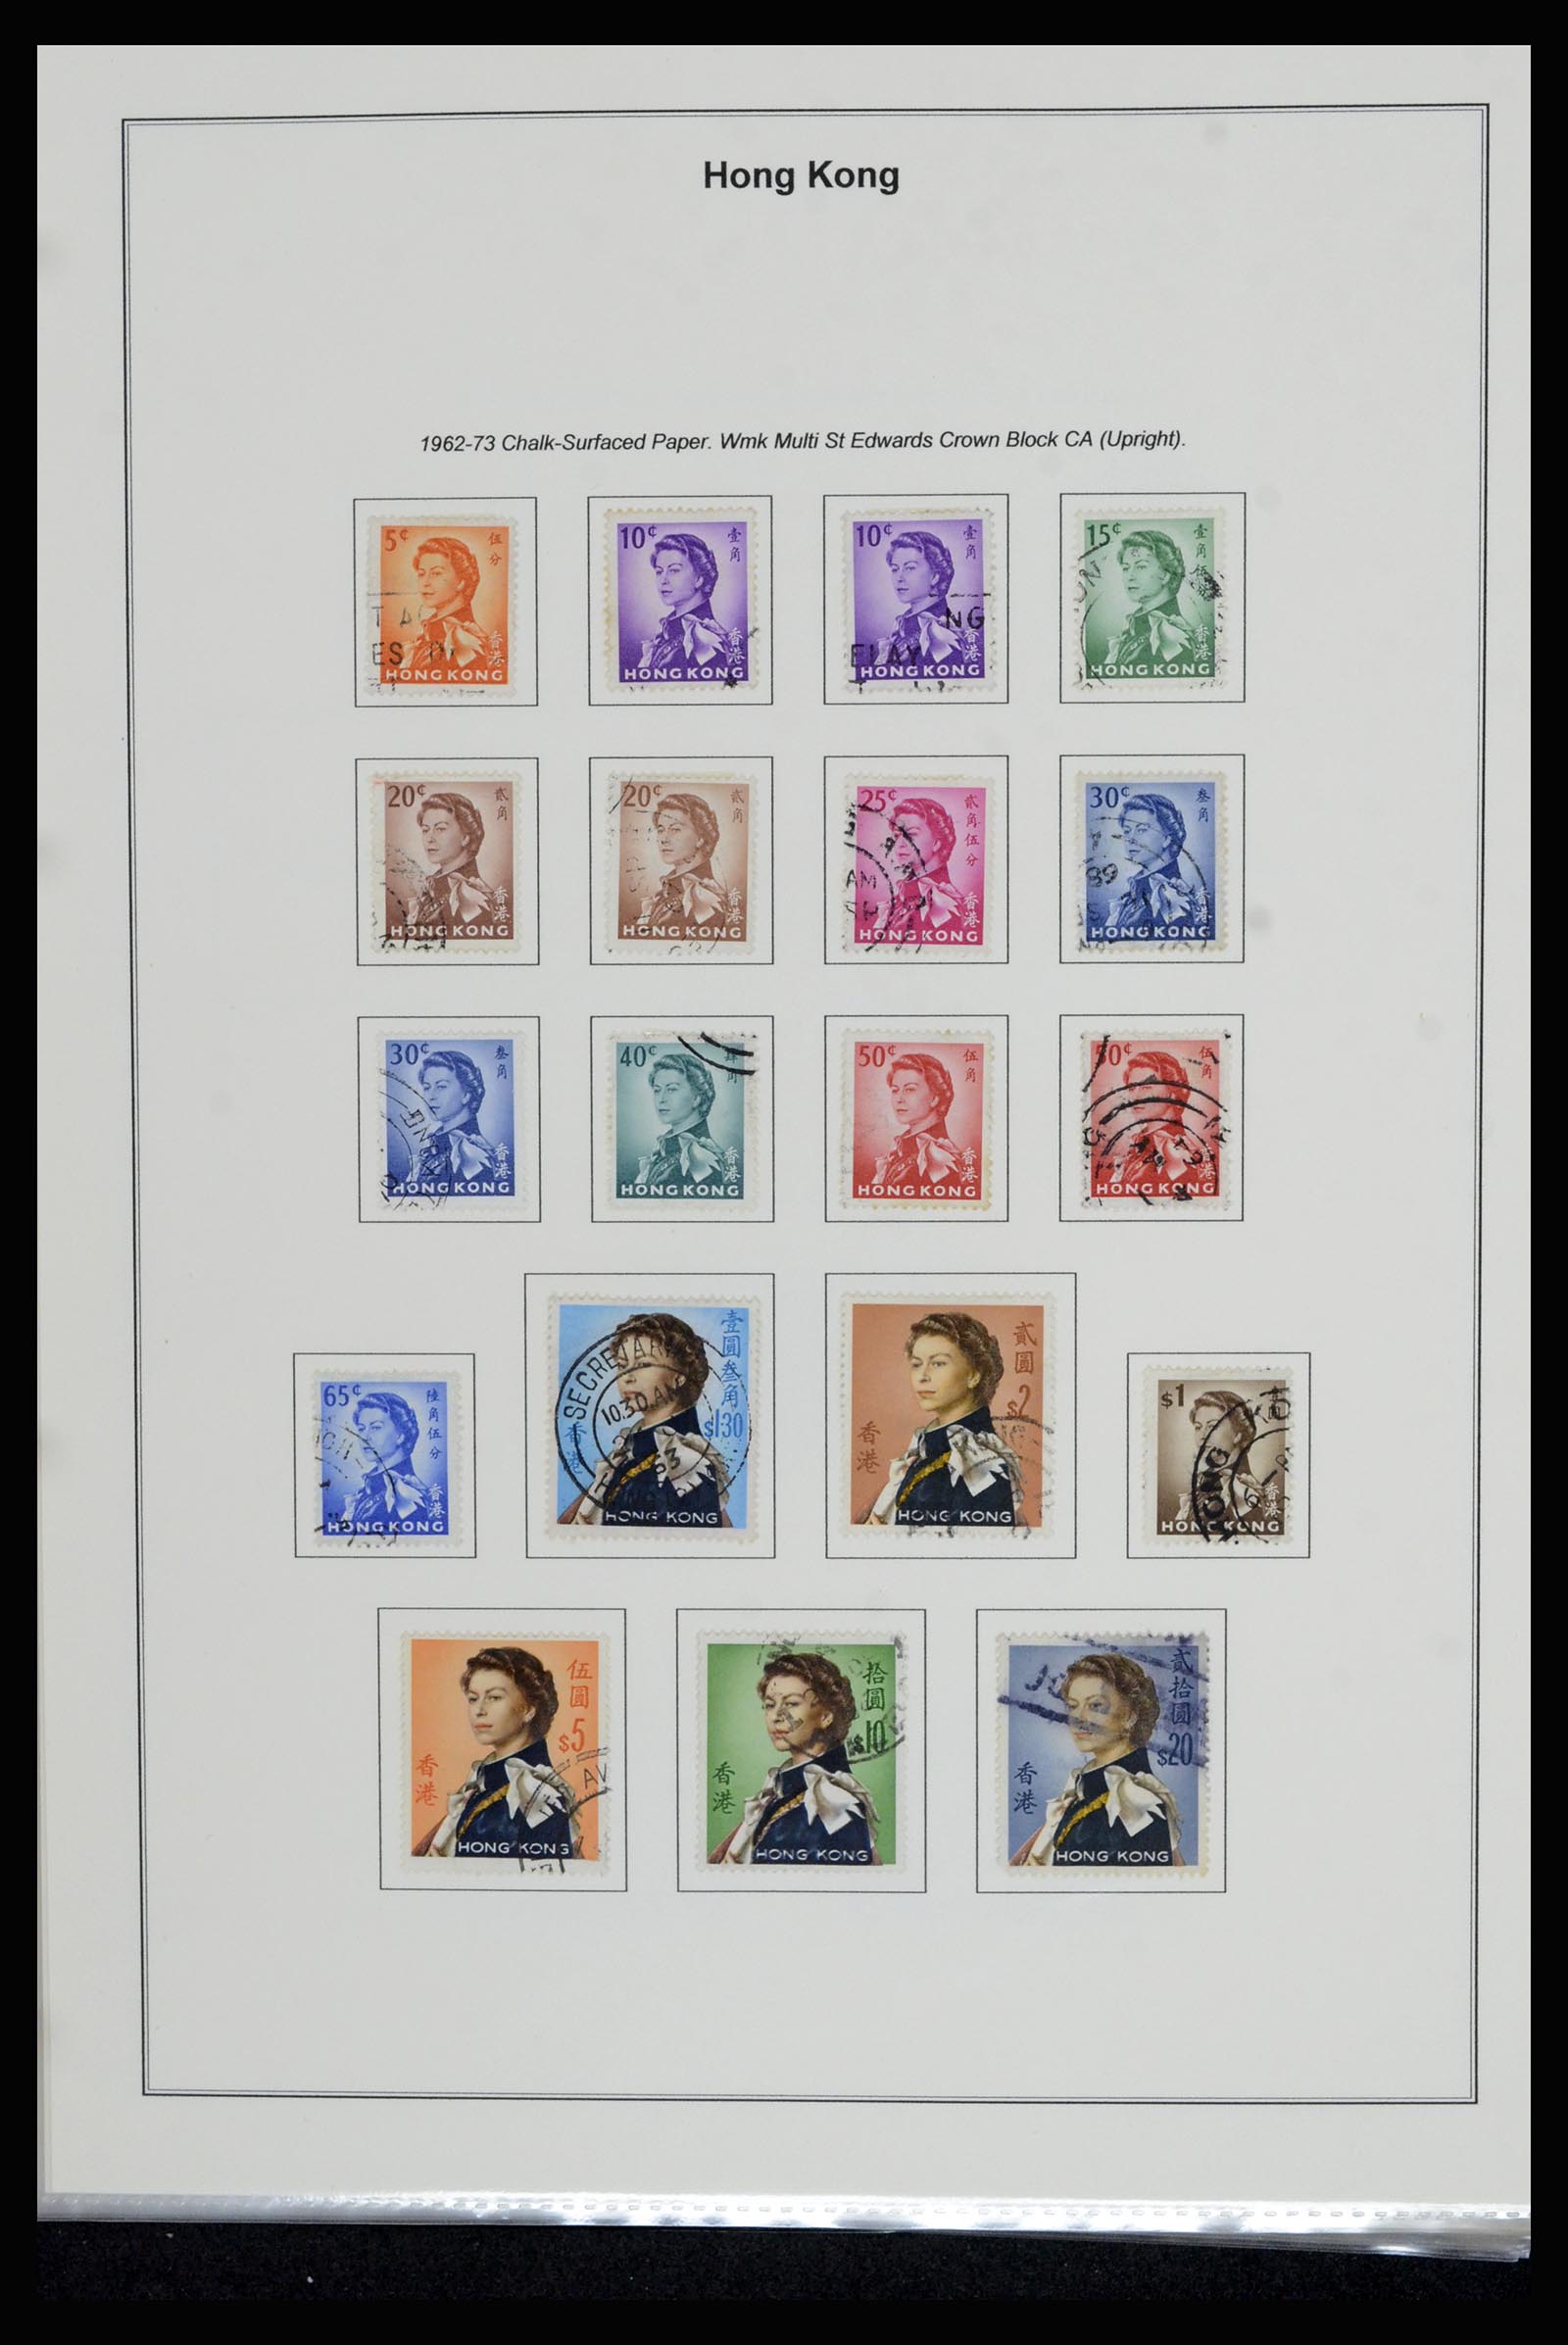 37079 021 - Stamp collection 37079 Hong Kong 1961-1984.